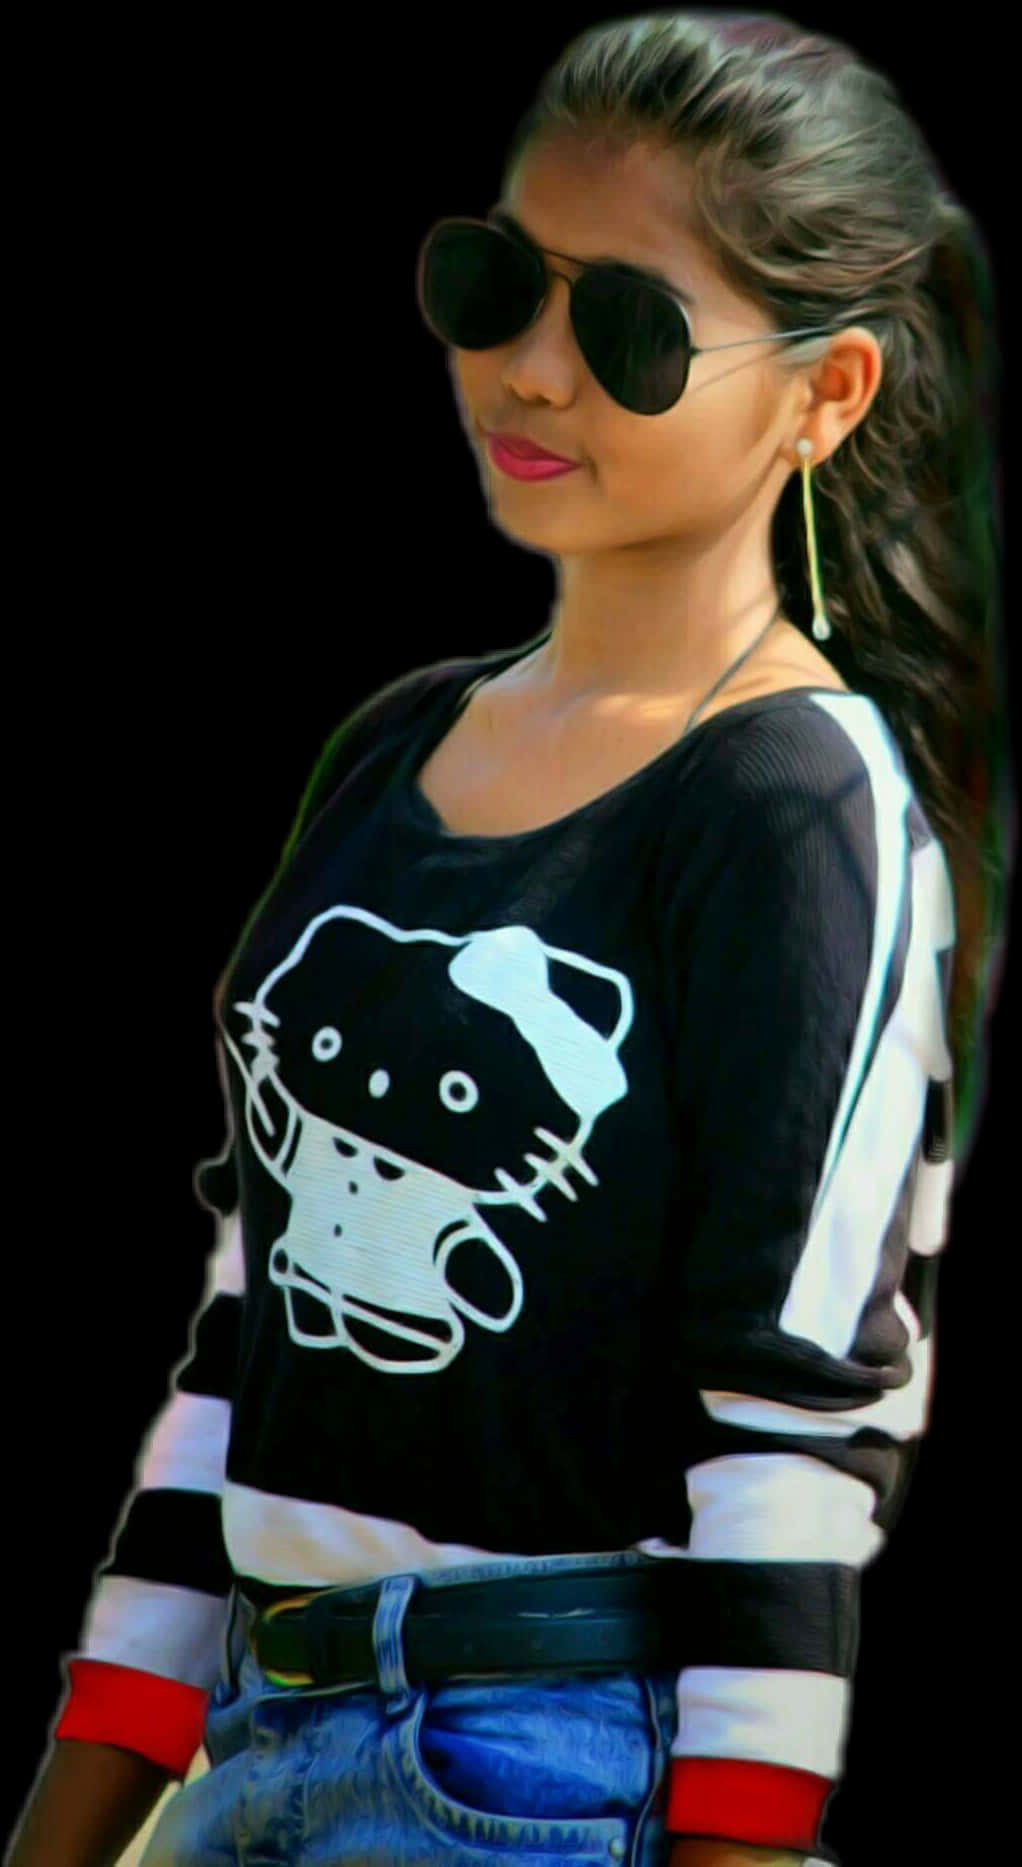 Stylish Indian Girlin Sunglassesand Hello Kitty Shirt PNG